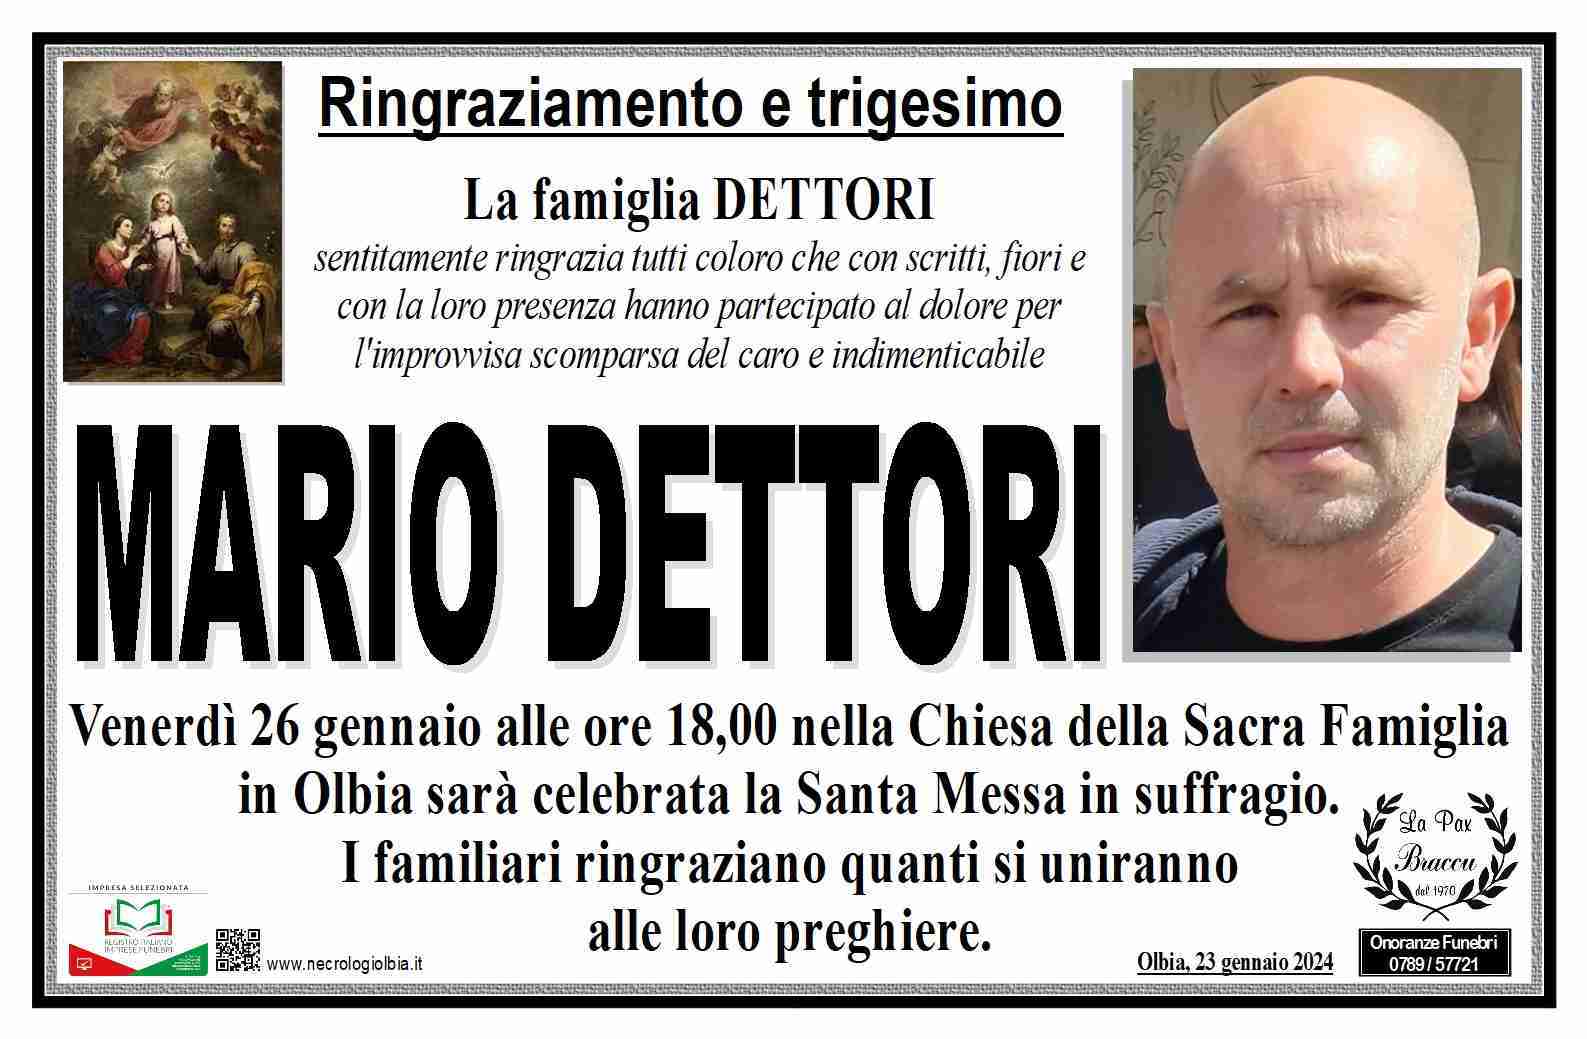 Mario Dettori